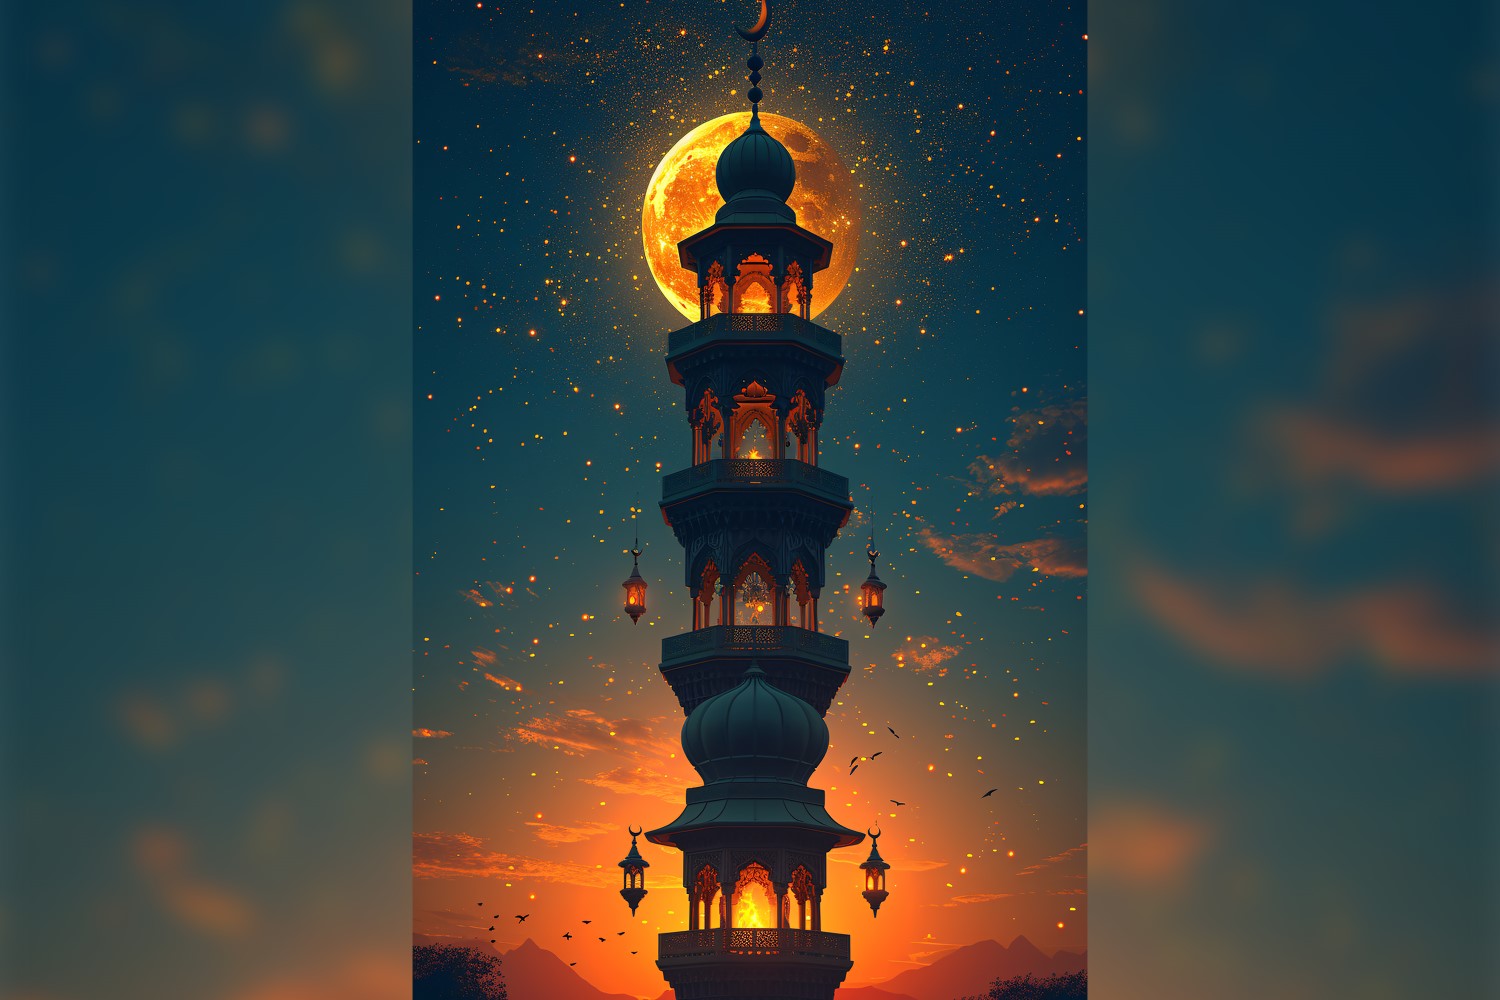 Ramadan Kareem greeting card poster design with mosque & moon